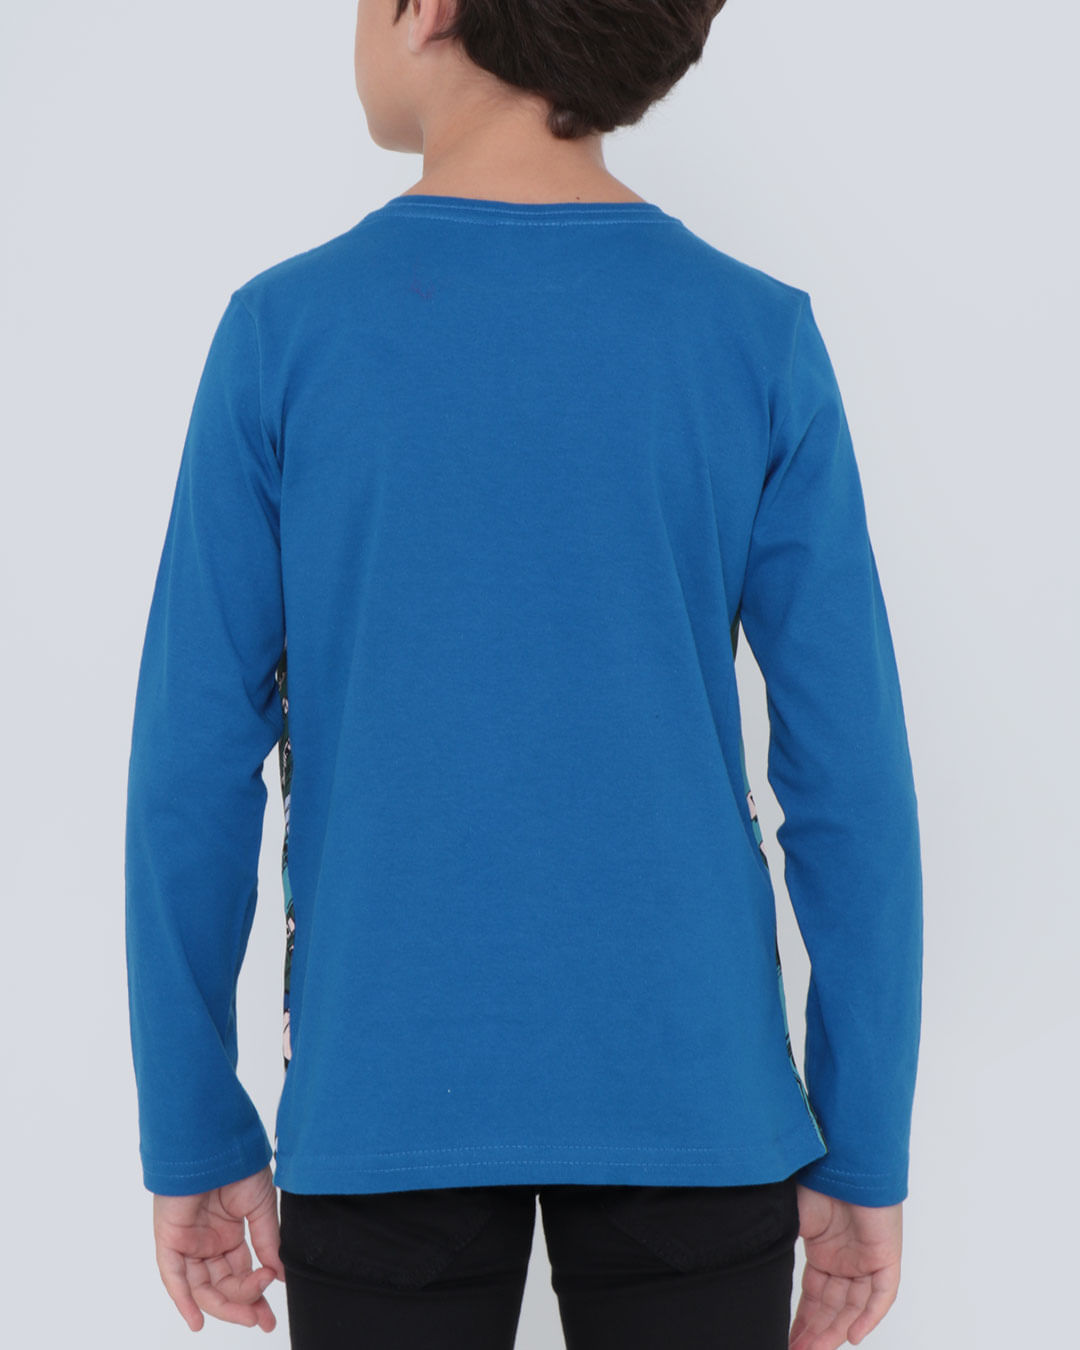 Camiseta-In2120-Ml-M412-Supman---Azul-Medio